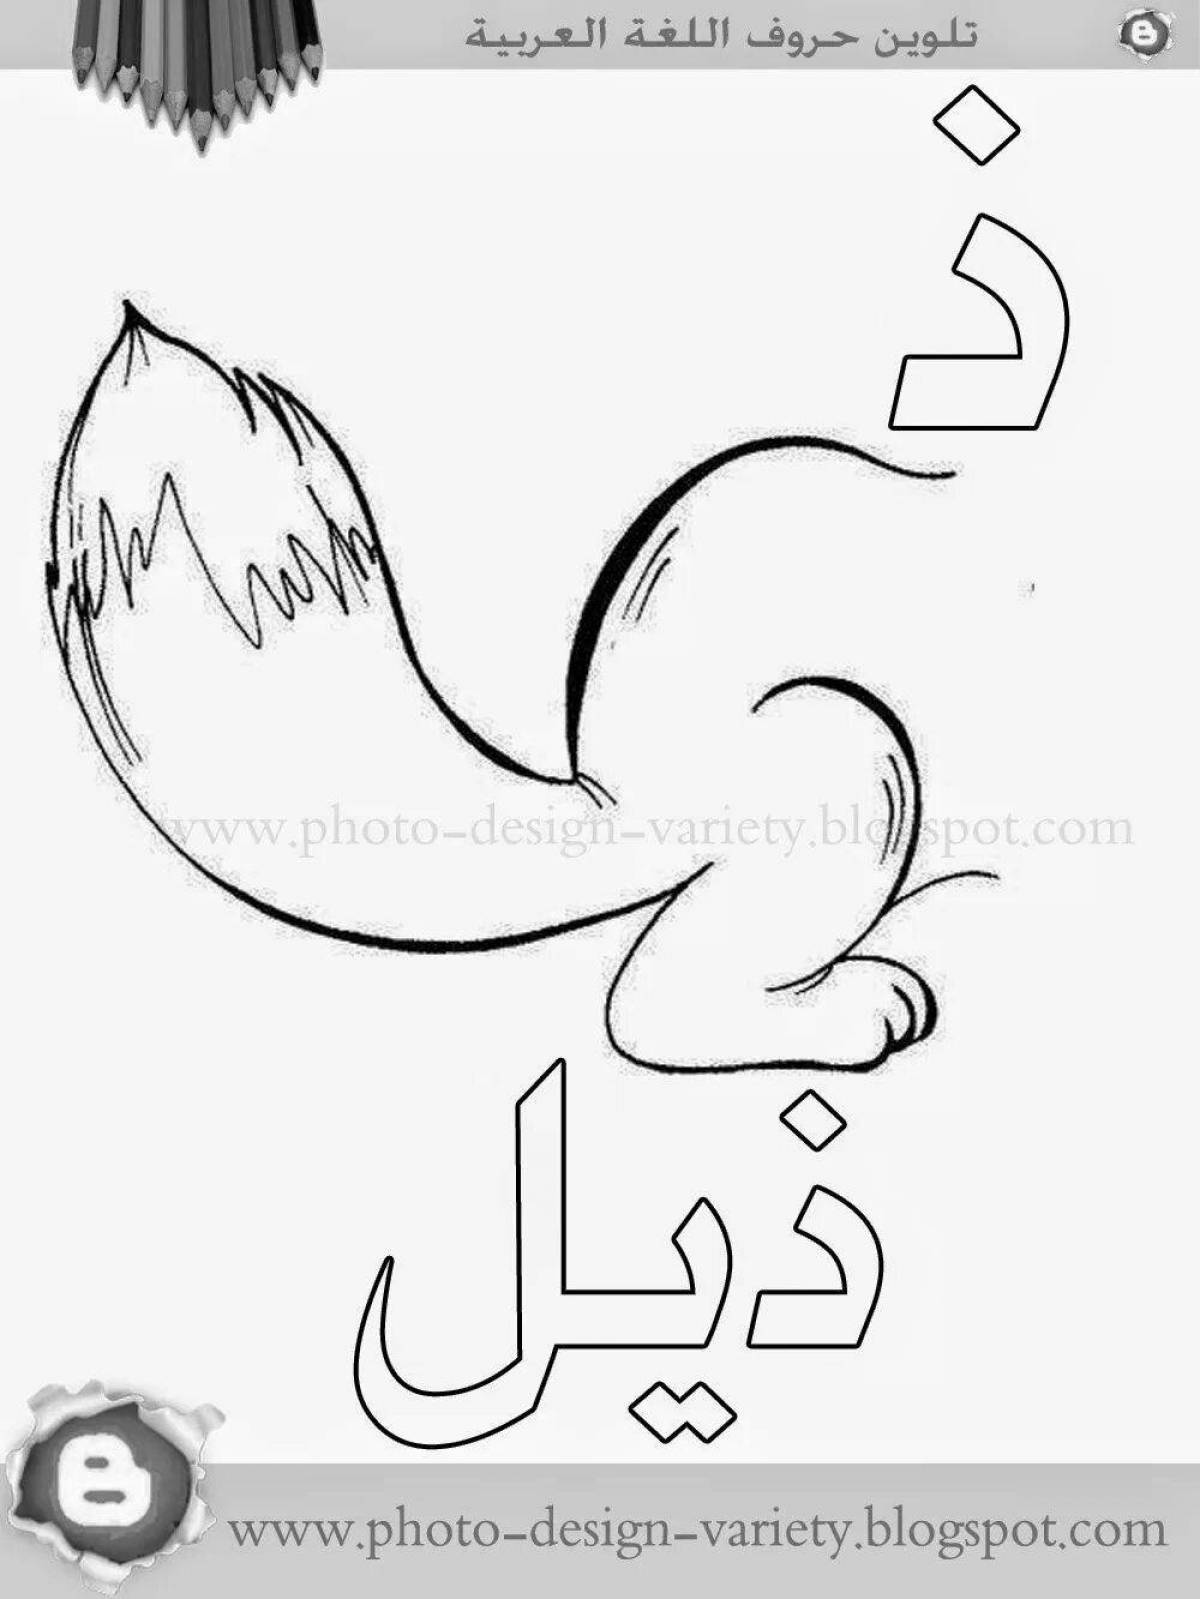 Увлекательная раскраска арабскими буквами